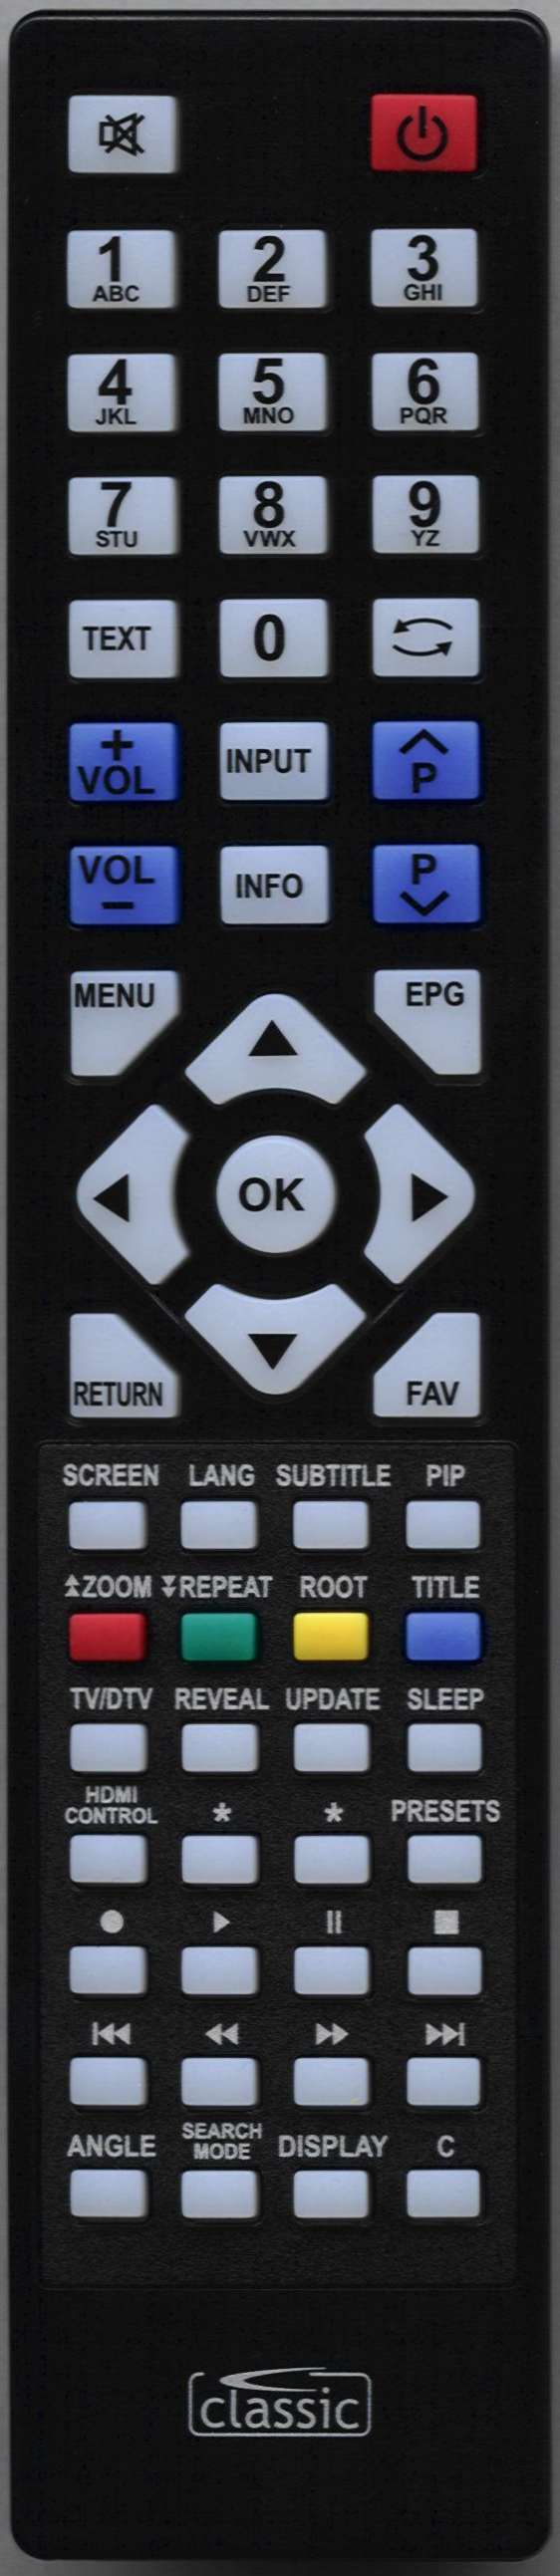 LUXOR LCD19880HDF Remote Control Alternative